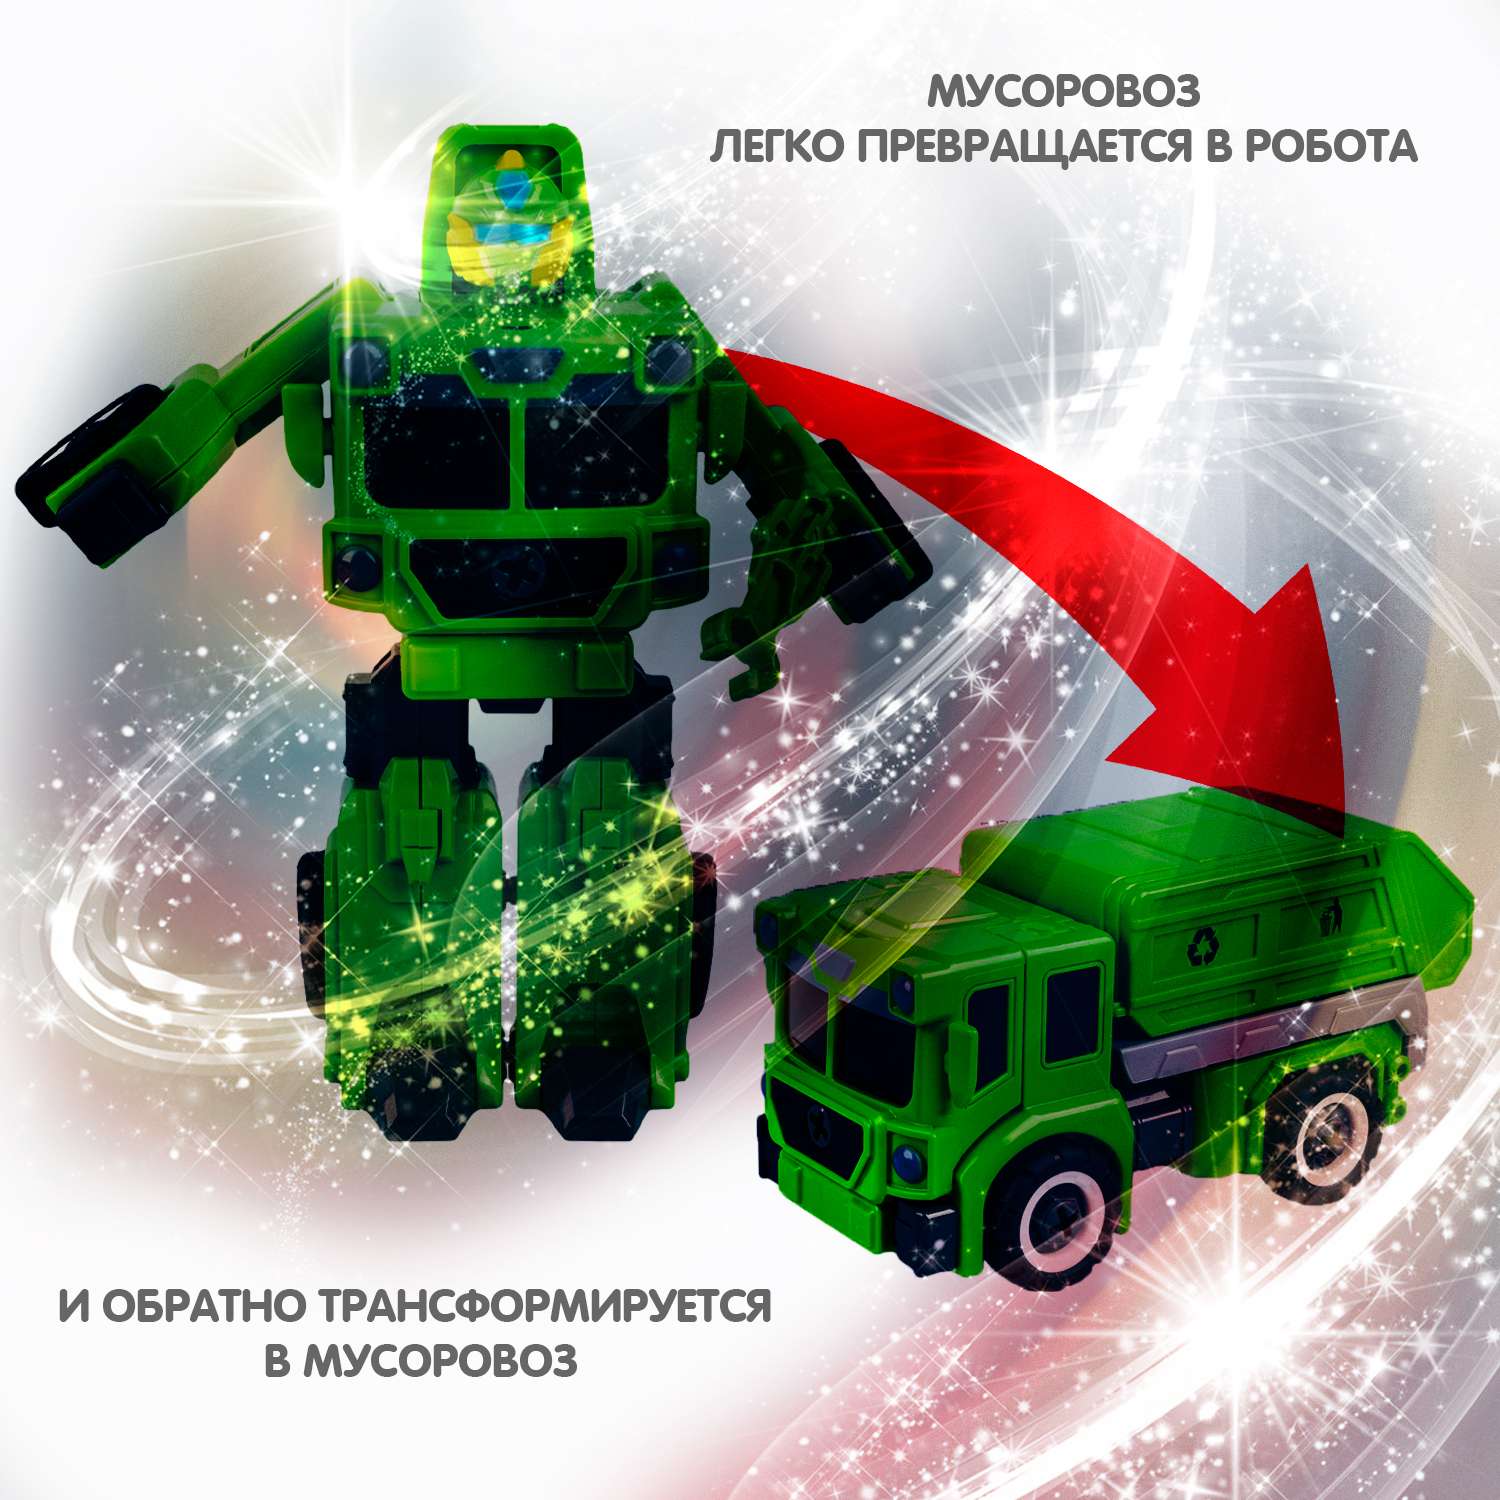 Трансформер-конструктор BONDIBON Bondibot Робот-мусоровоз 2 в 1 зеленого цвета с отвёрткой - фото 7